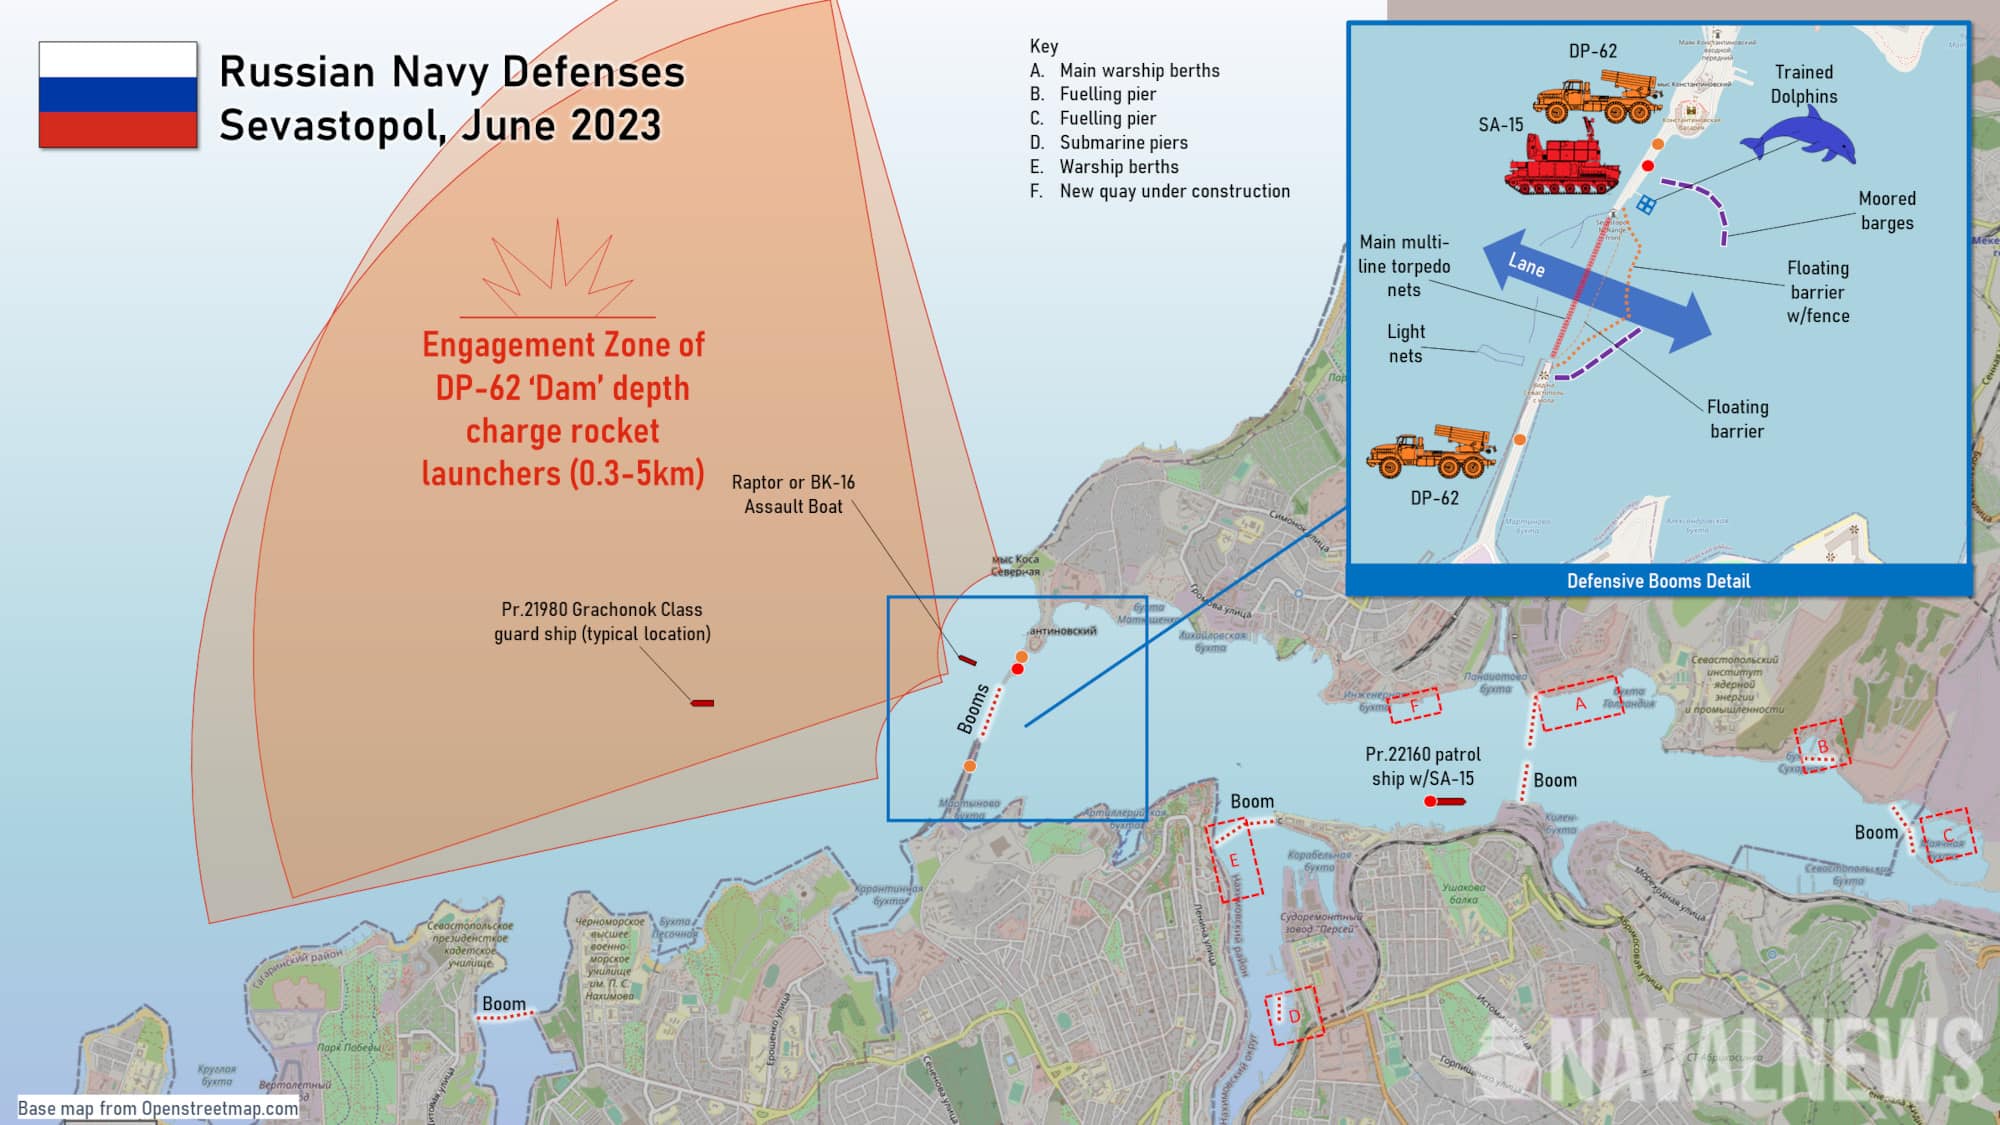 Россия усиливает оборону базы флота в Севастополе боевыми дельфинами, - СМИ